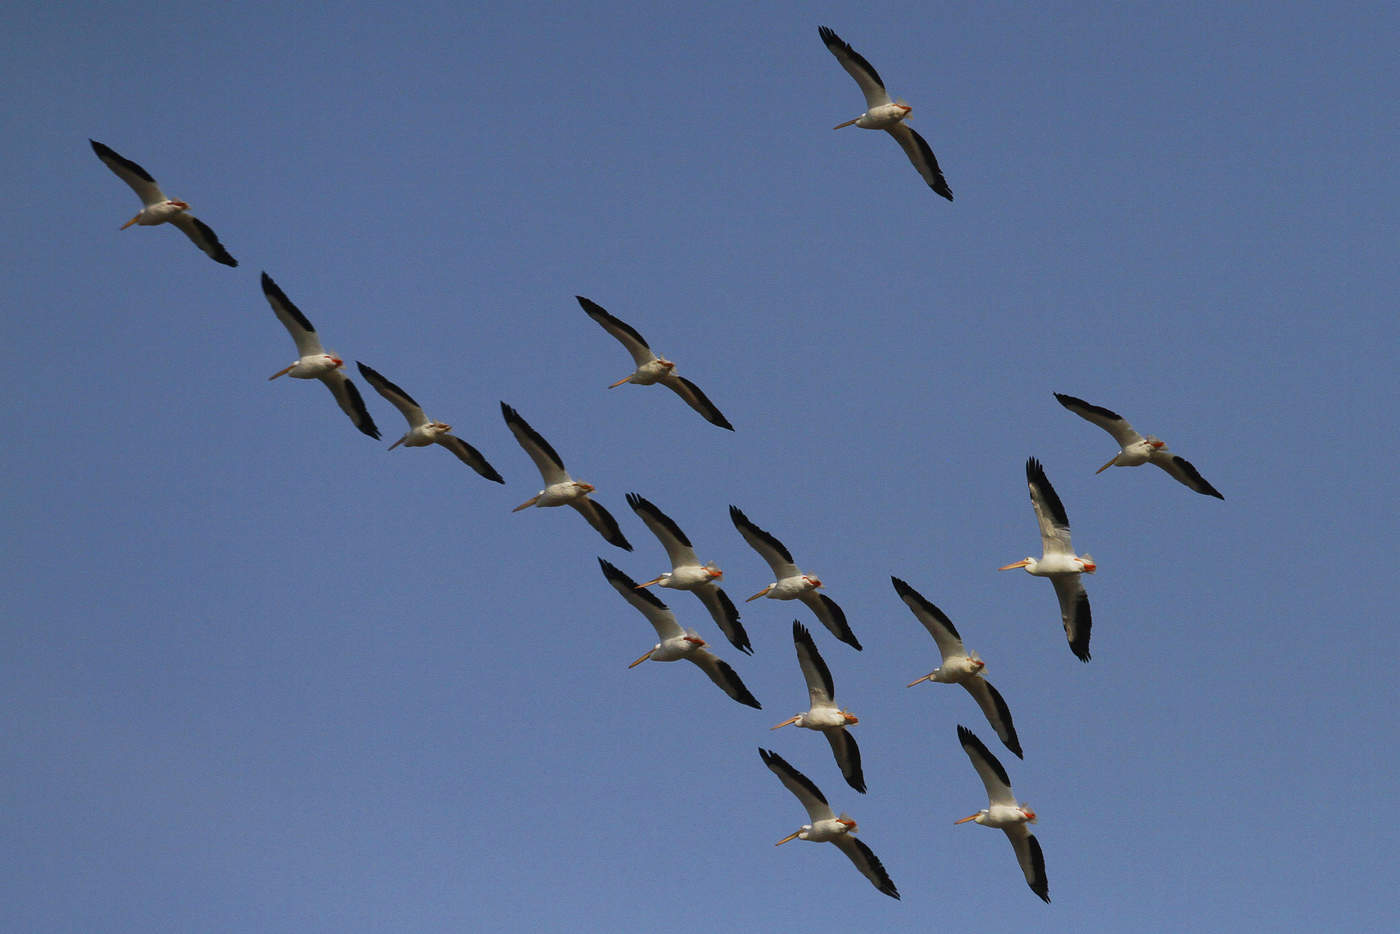 Aves darían pistas claves sobre cambio climático